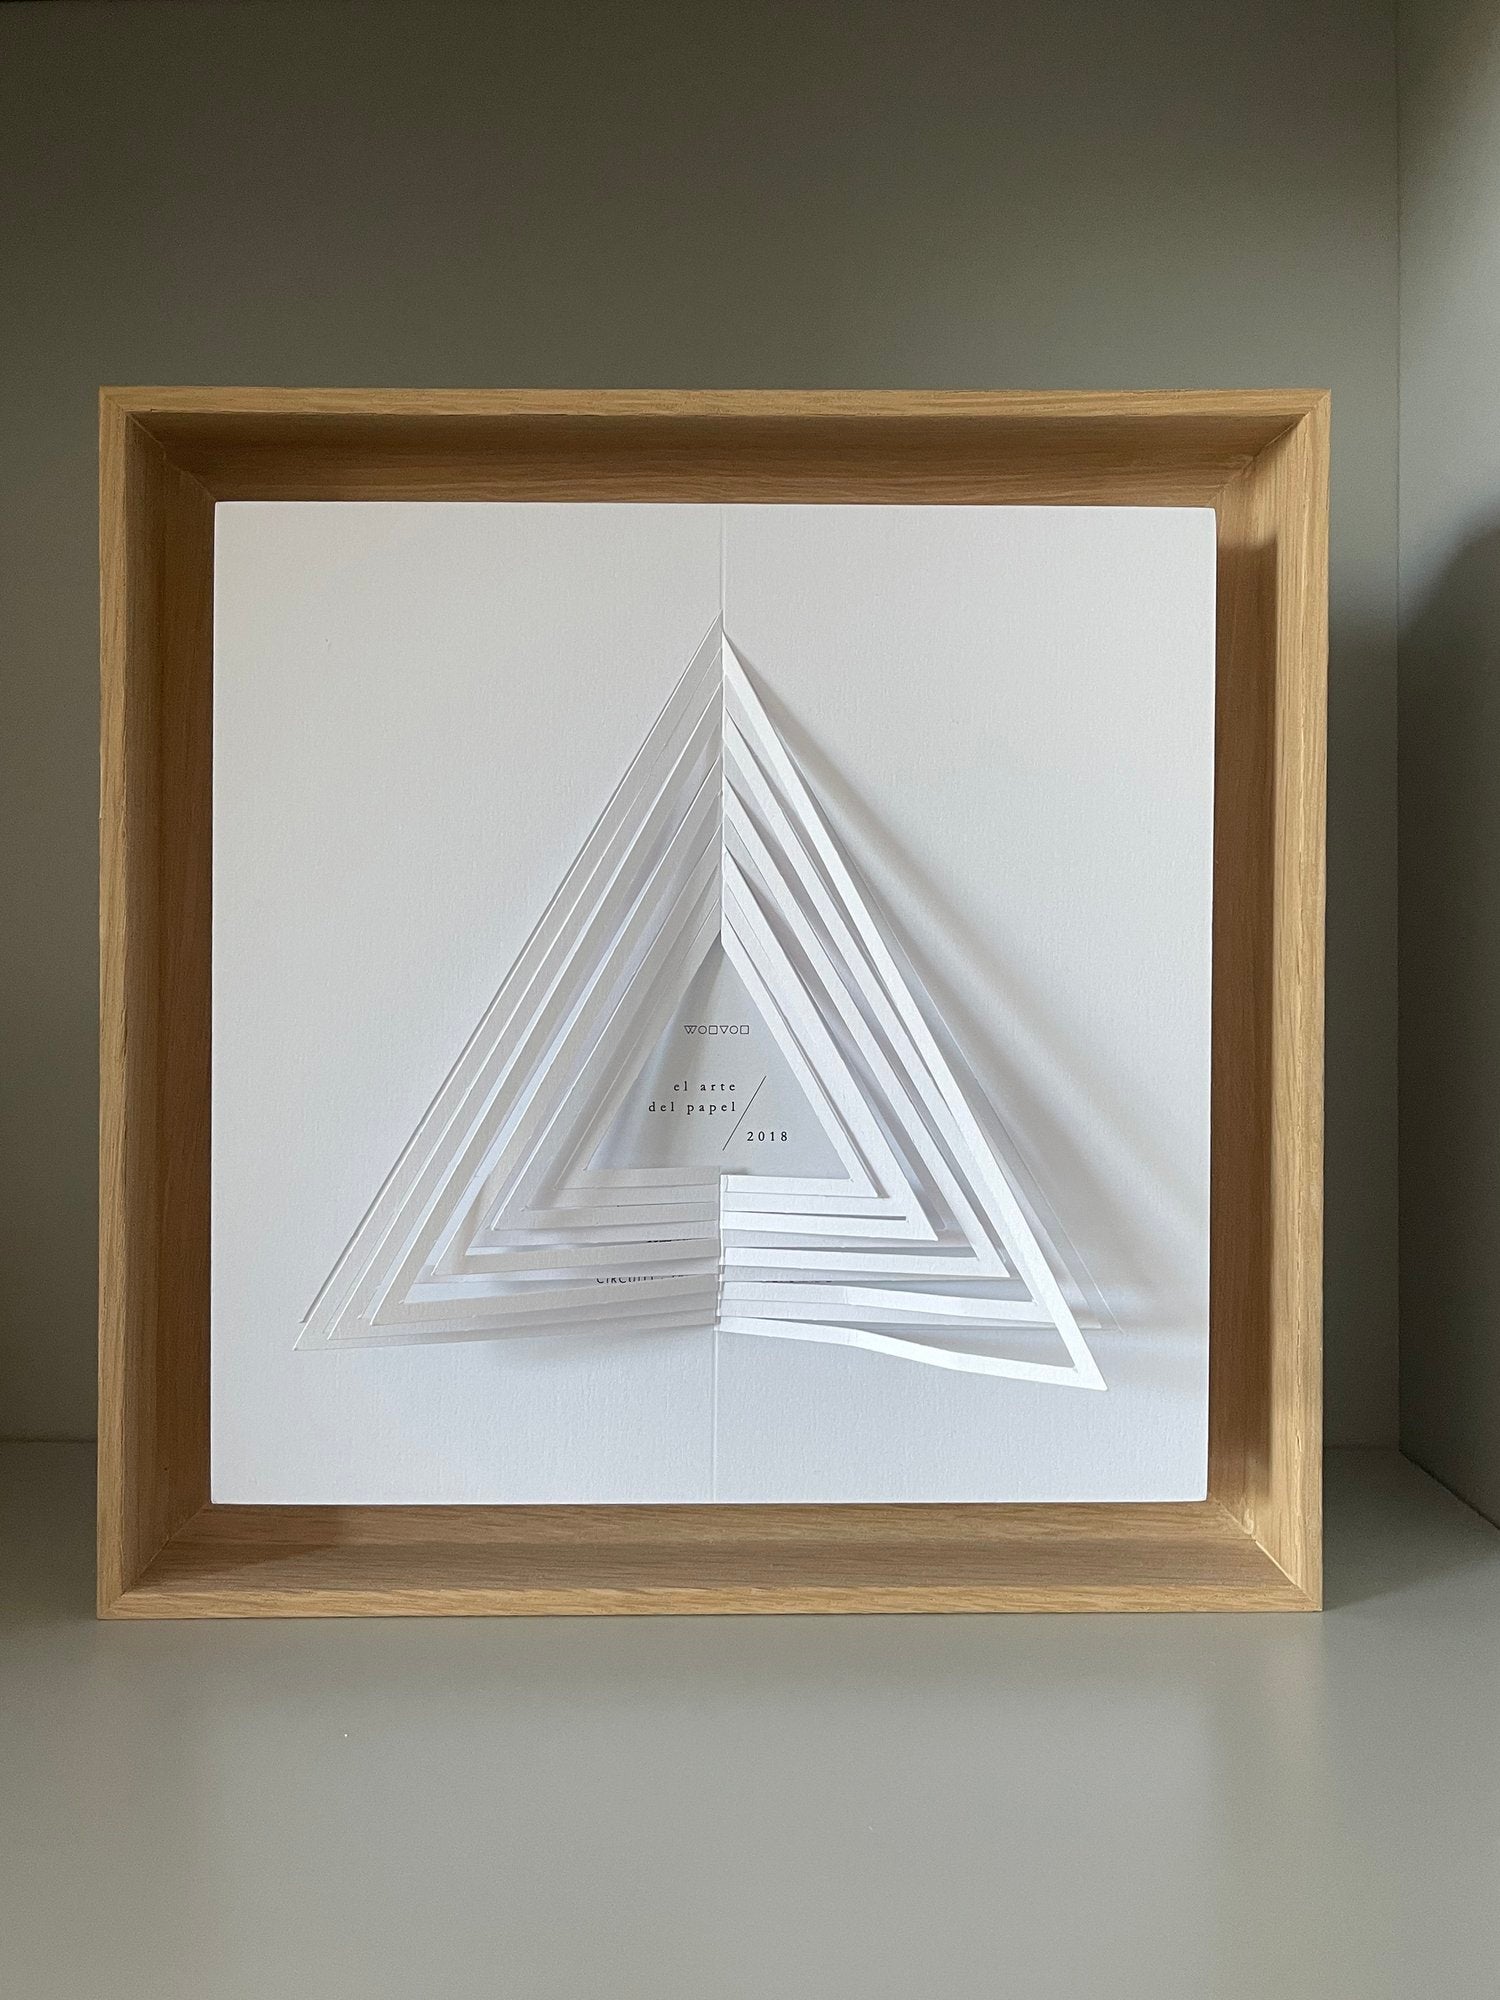 El Arte del Papel "Triángulo"